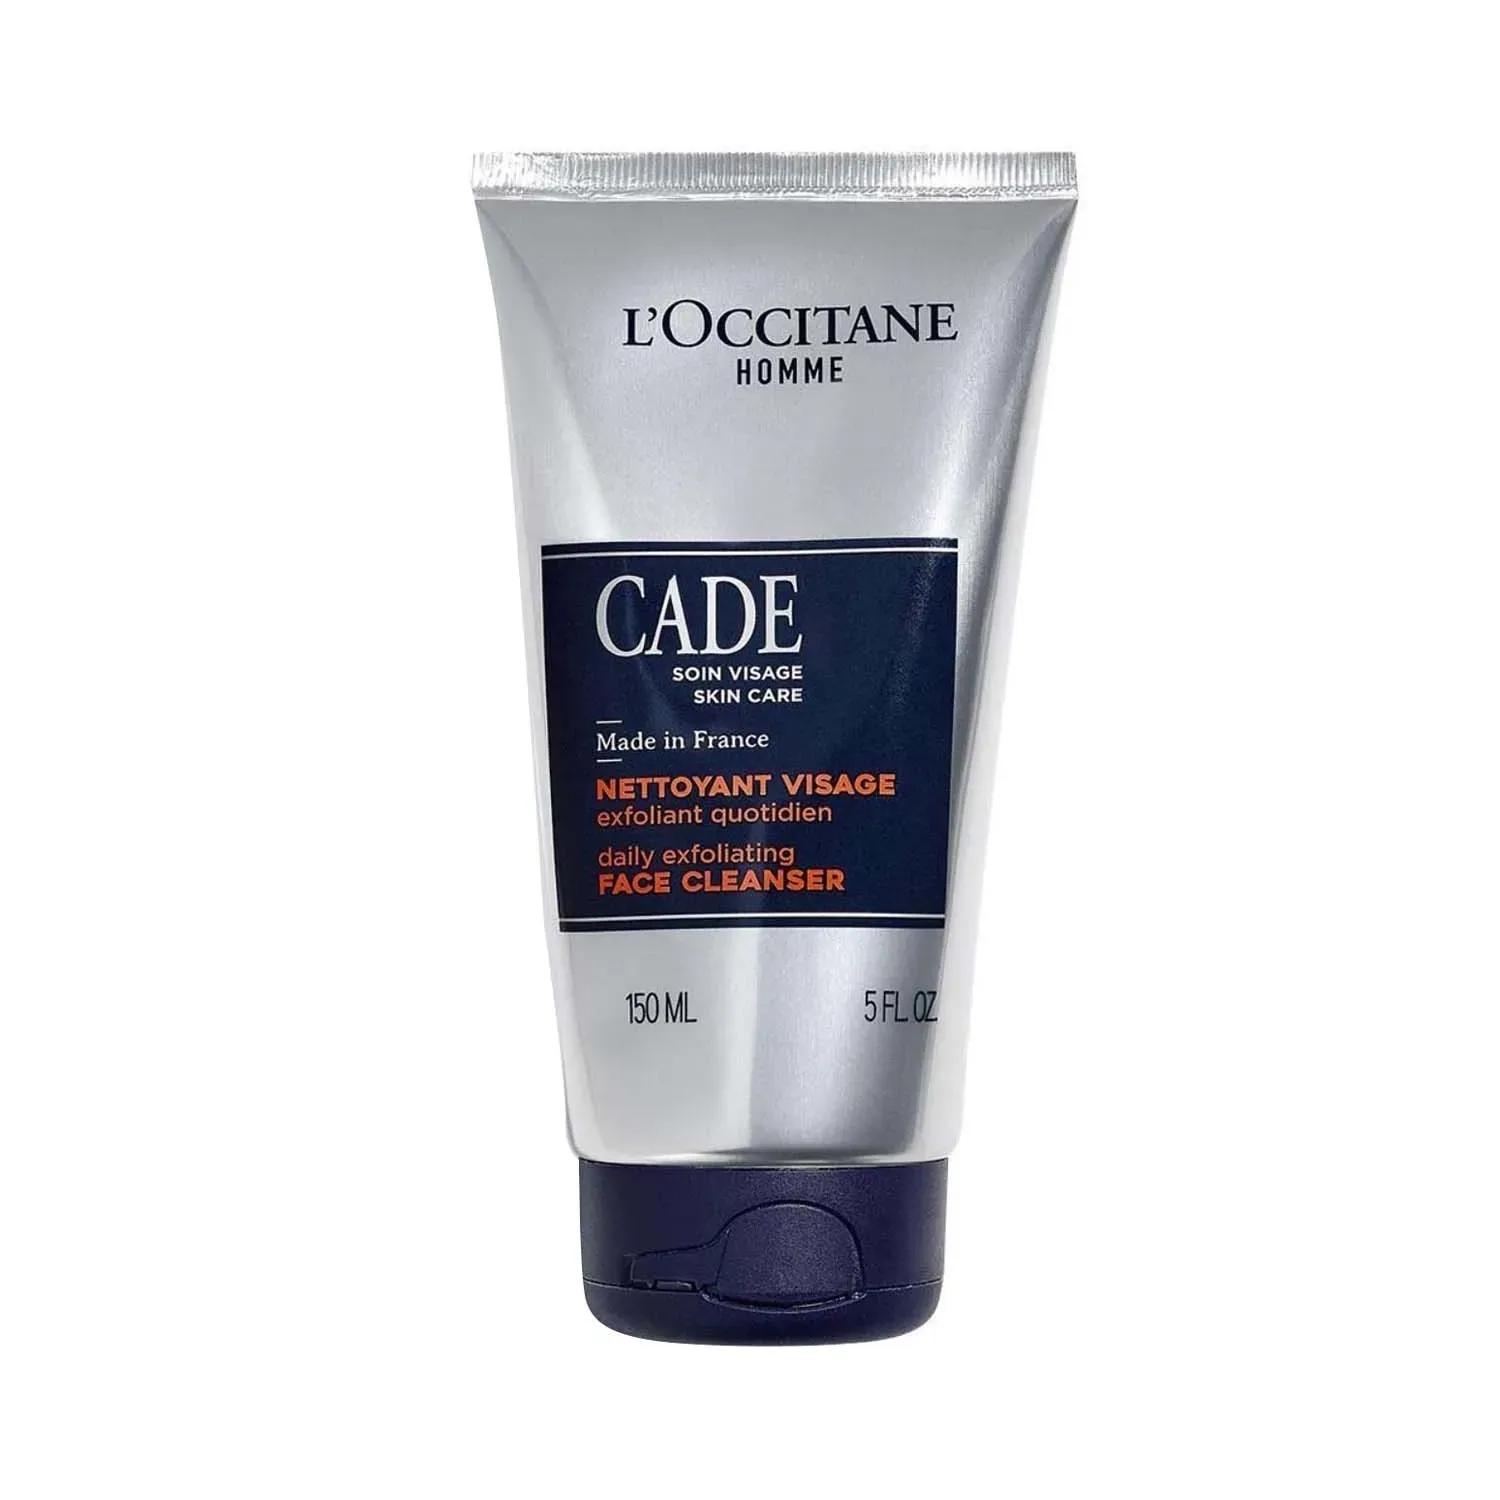 l'occitane cade daily exfoliating face cleanser - (150ml)